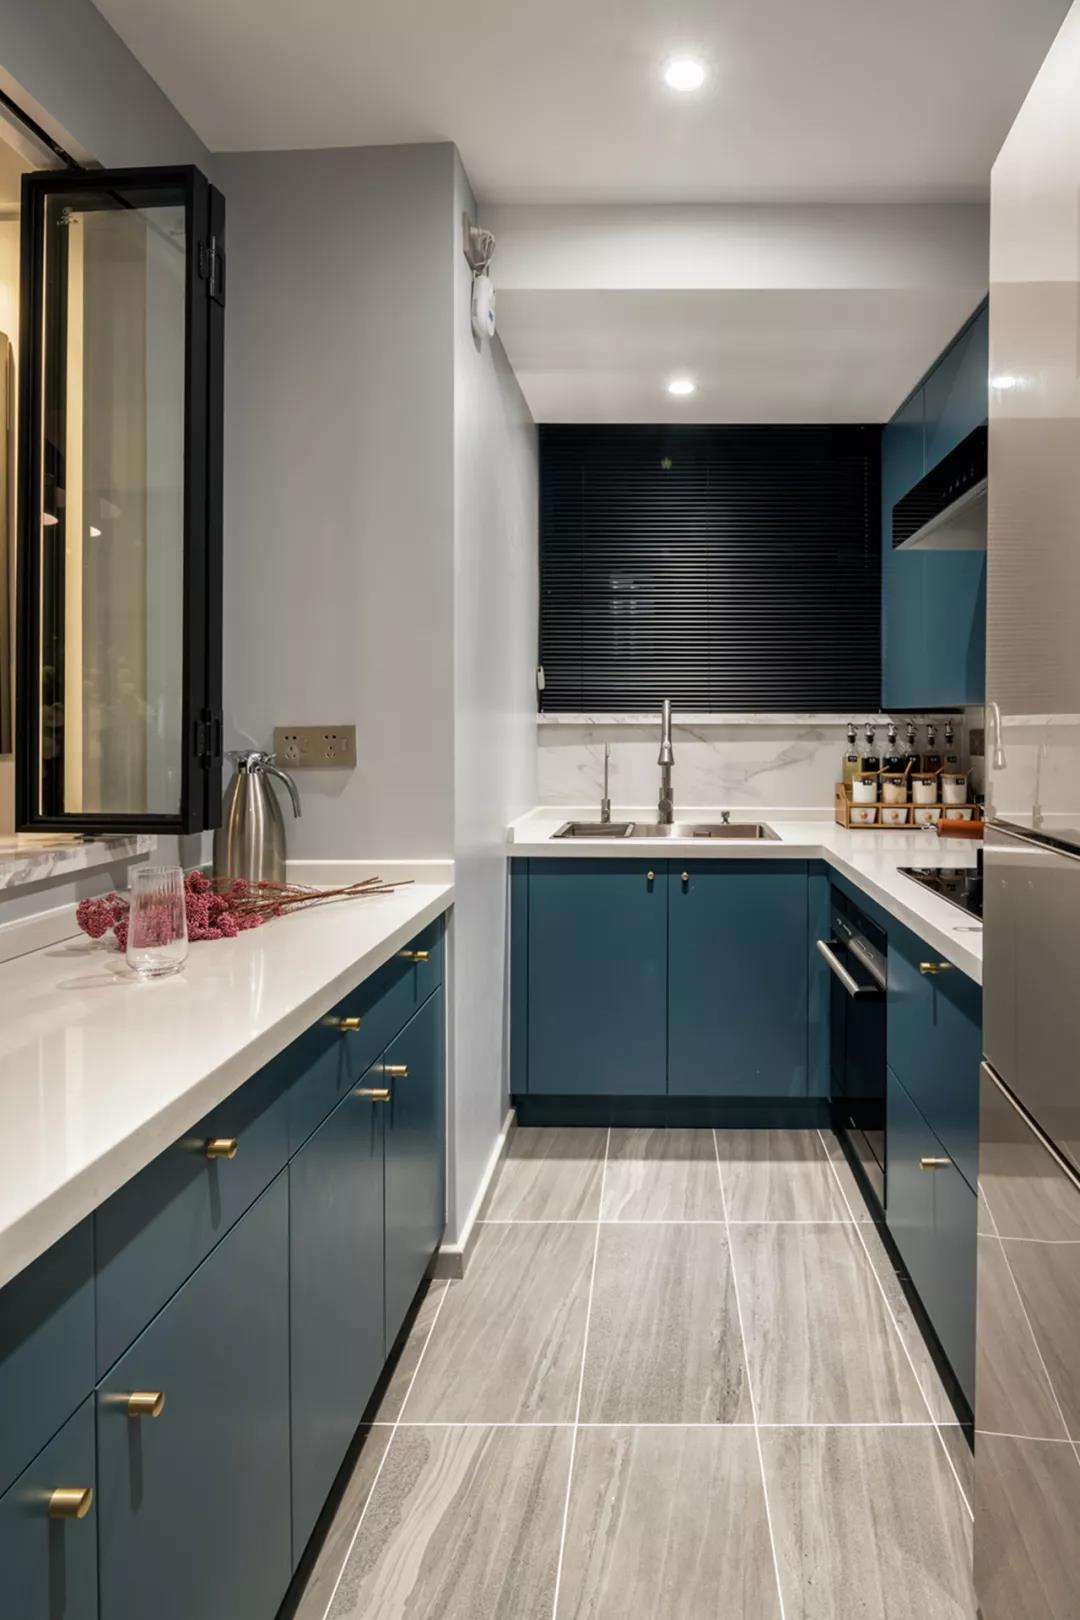 蓝色橱柜设计精致大方，搭配白色工作台，使室内空间环境氛围营造出独特的品味。